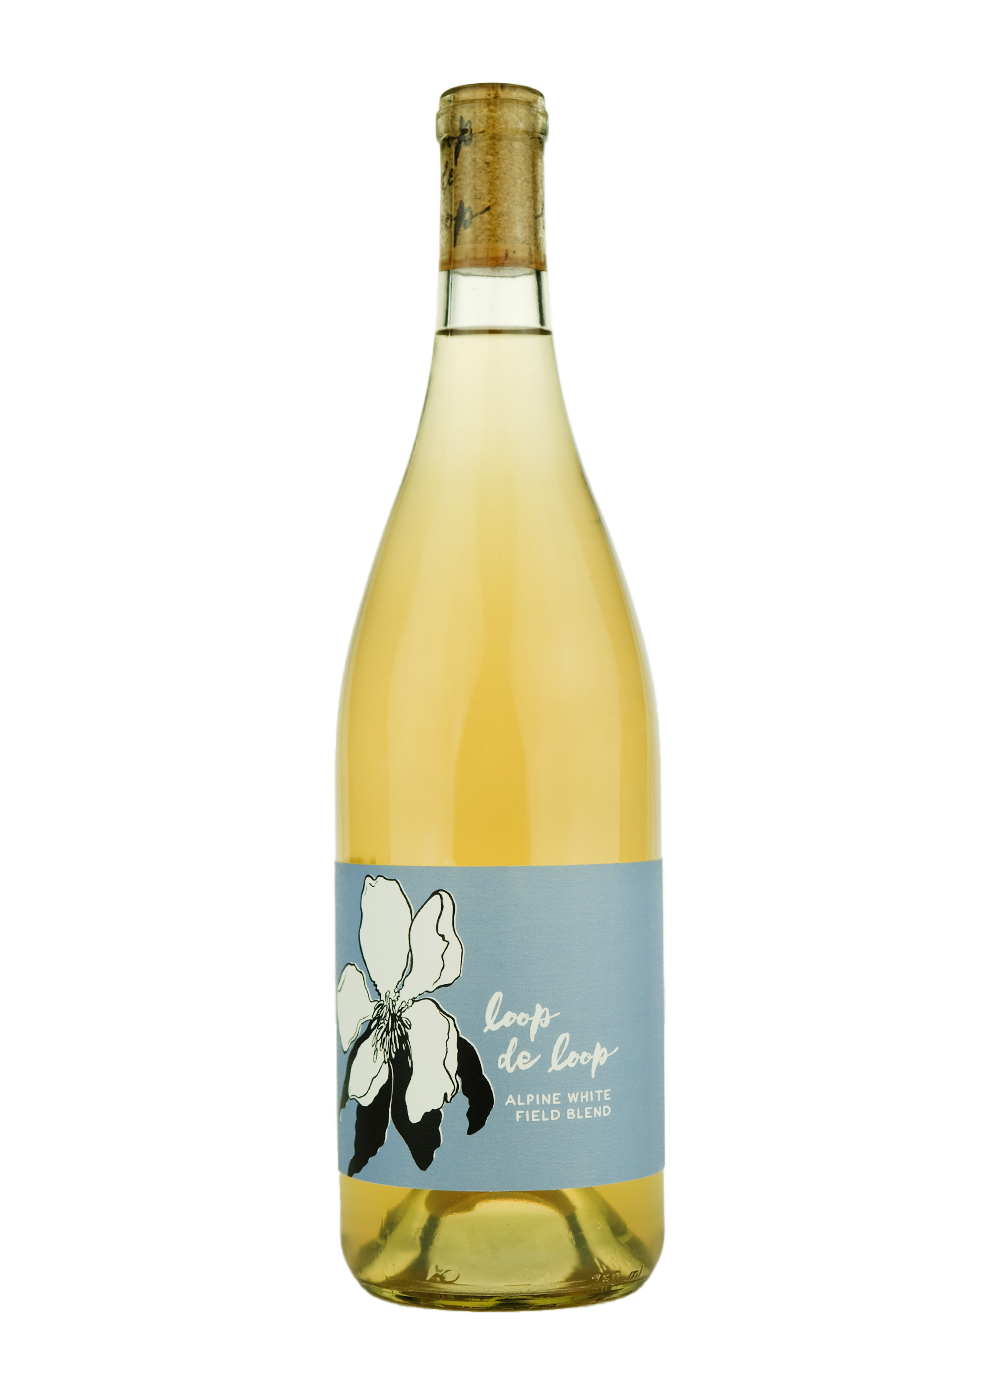 Loop de Loop 2022 White Wine ‘Alpine White’